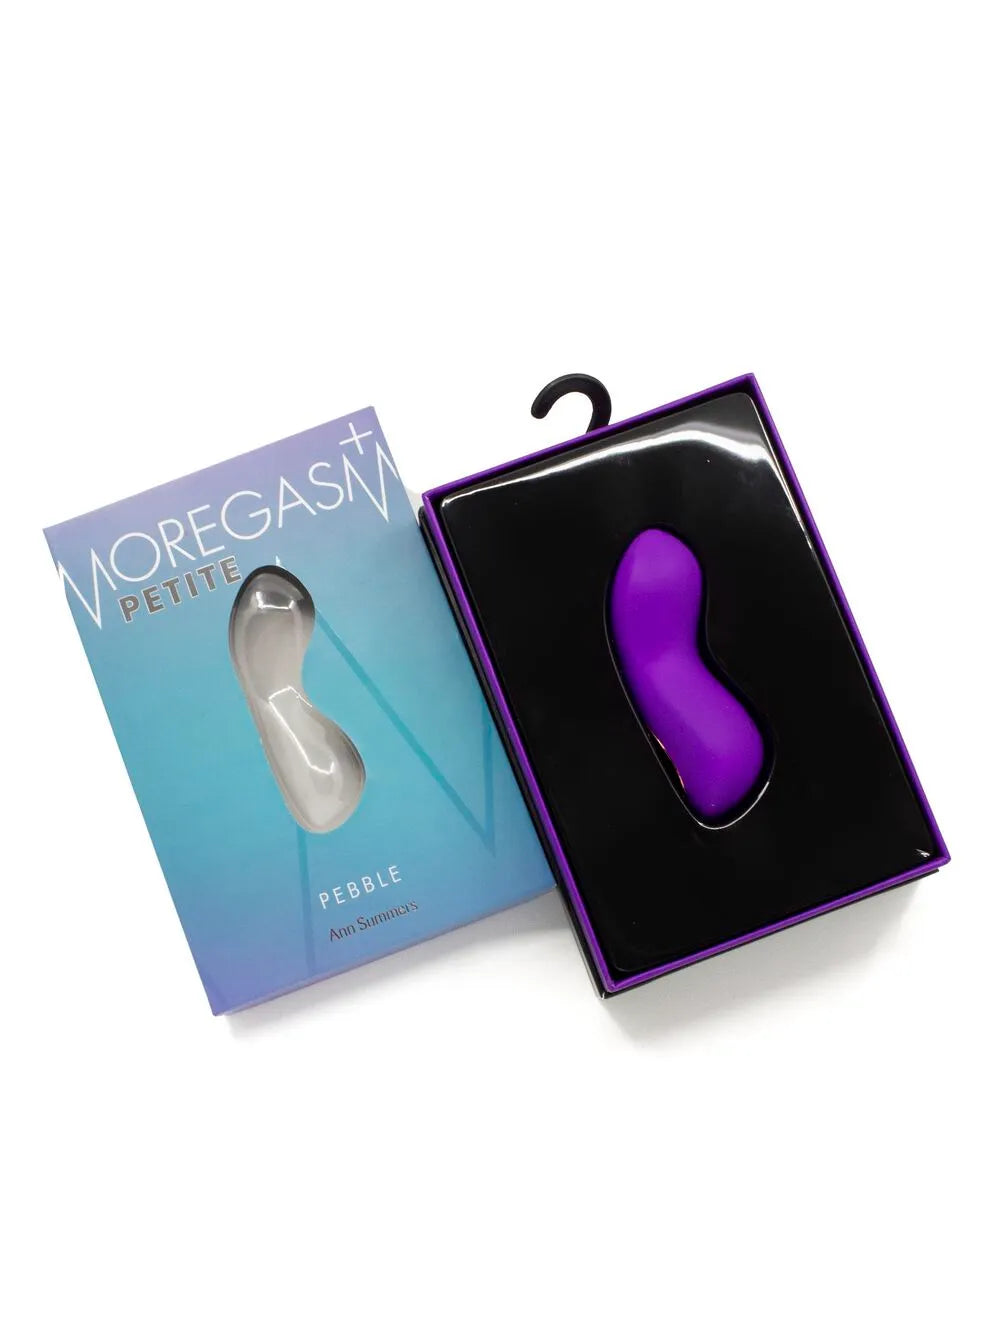 Moregasm+ Petite Pebble Vibrator